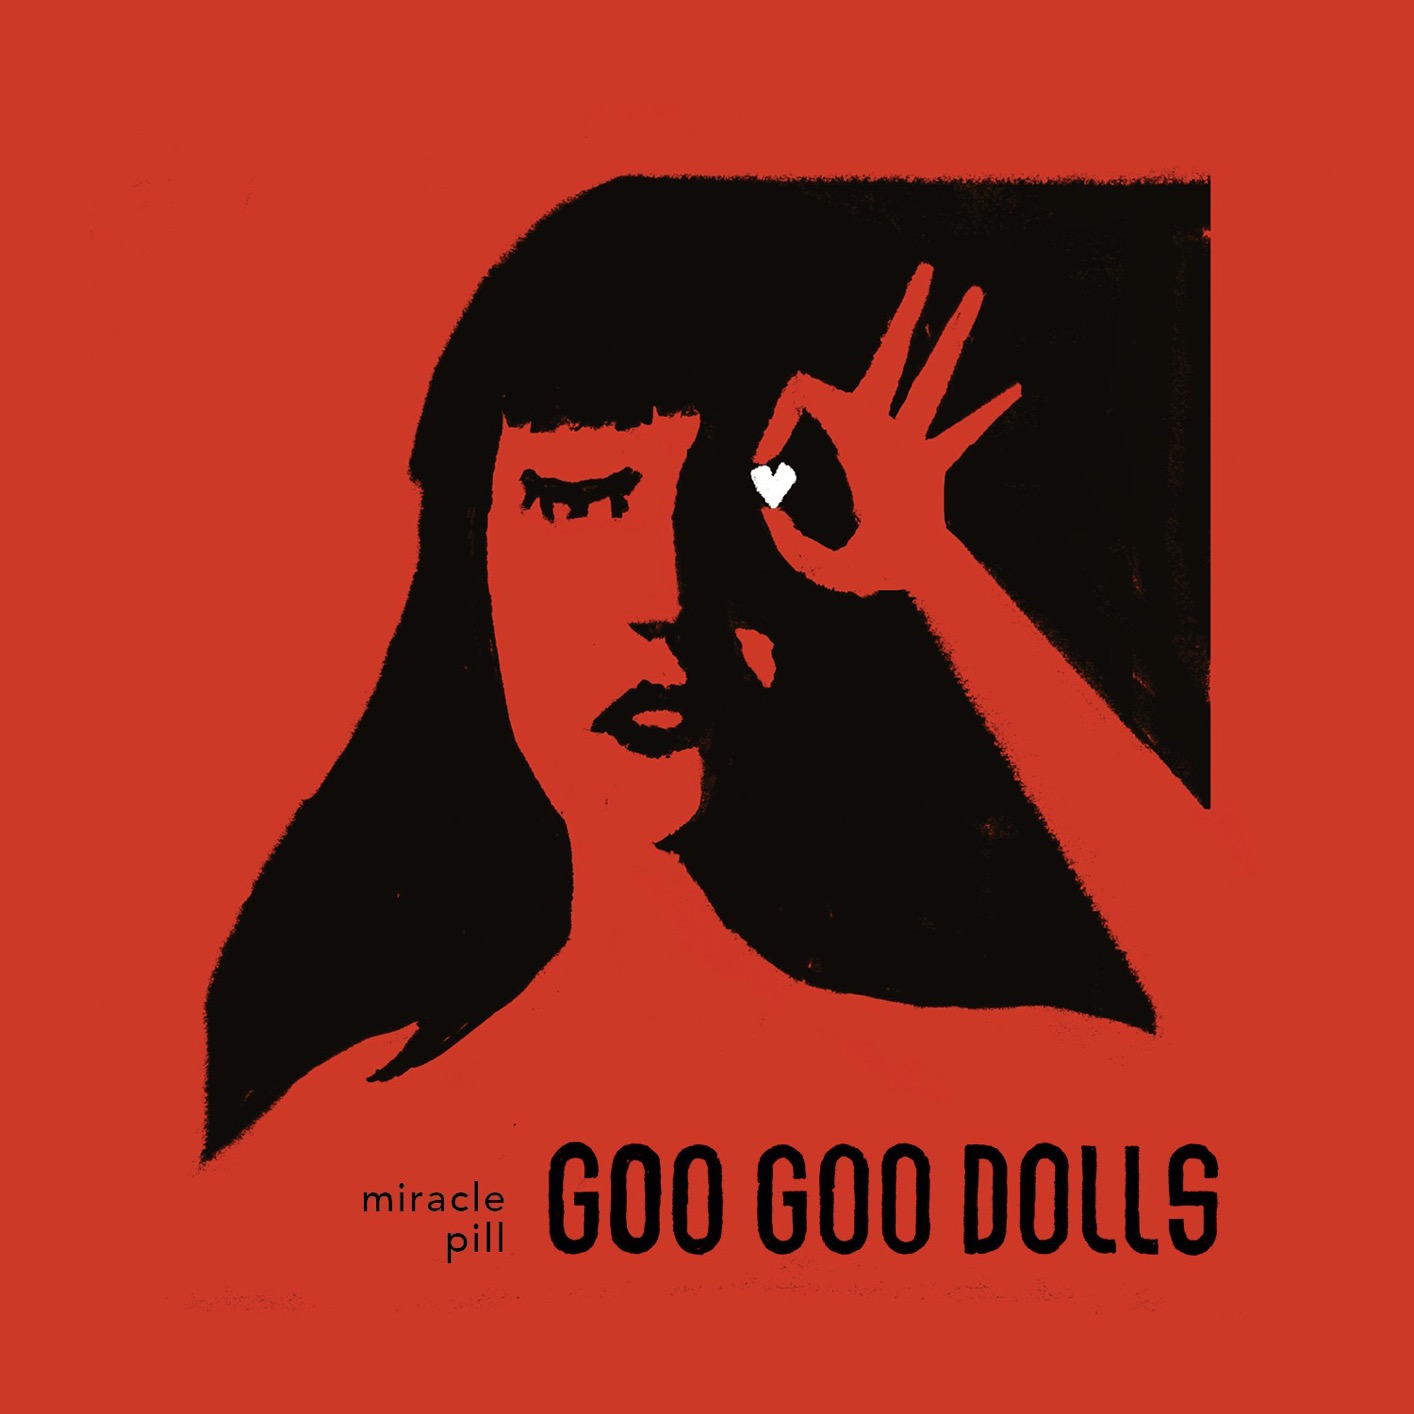 Goo Goo Dolls – Miracle Pill (2019) [FLAC 24bit/48kHz]